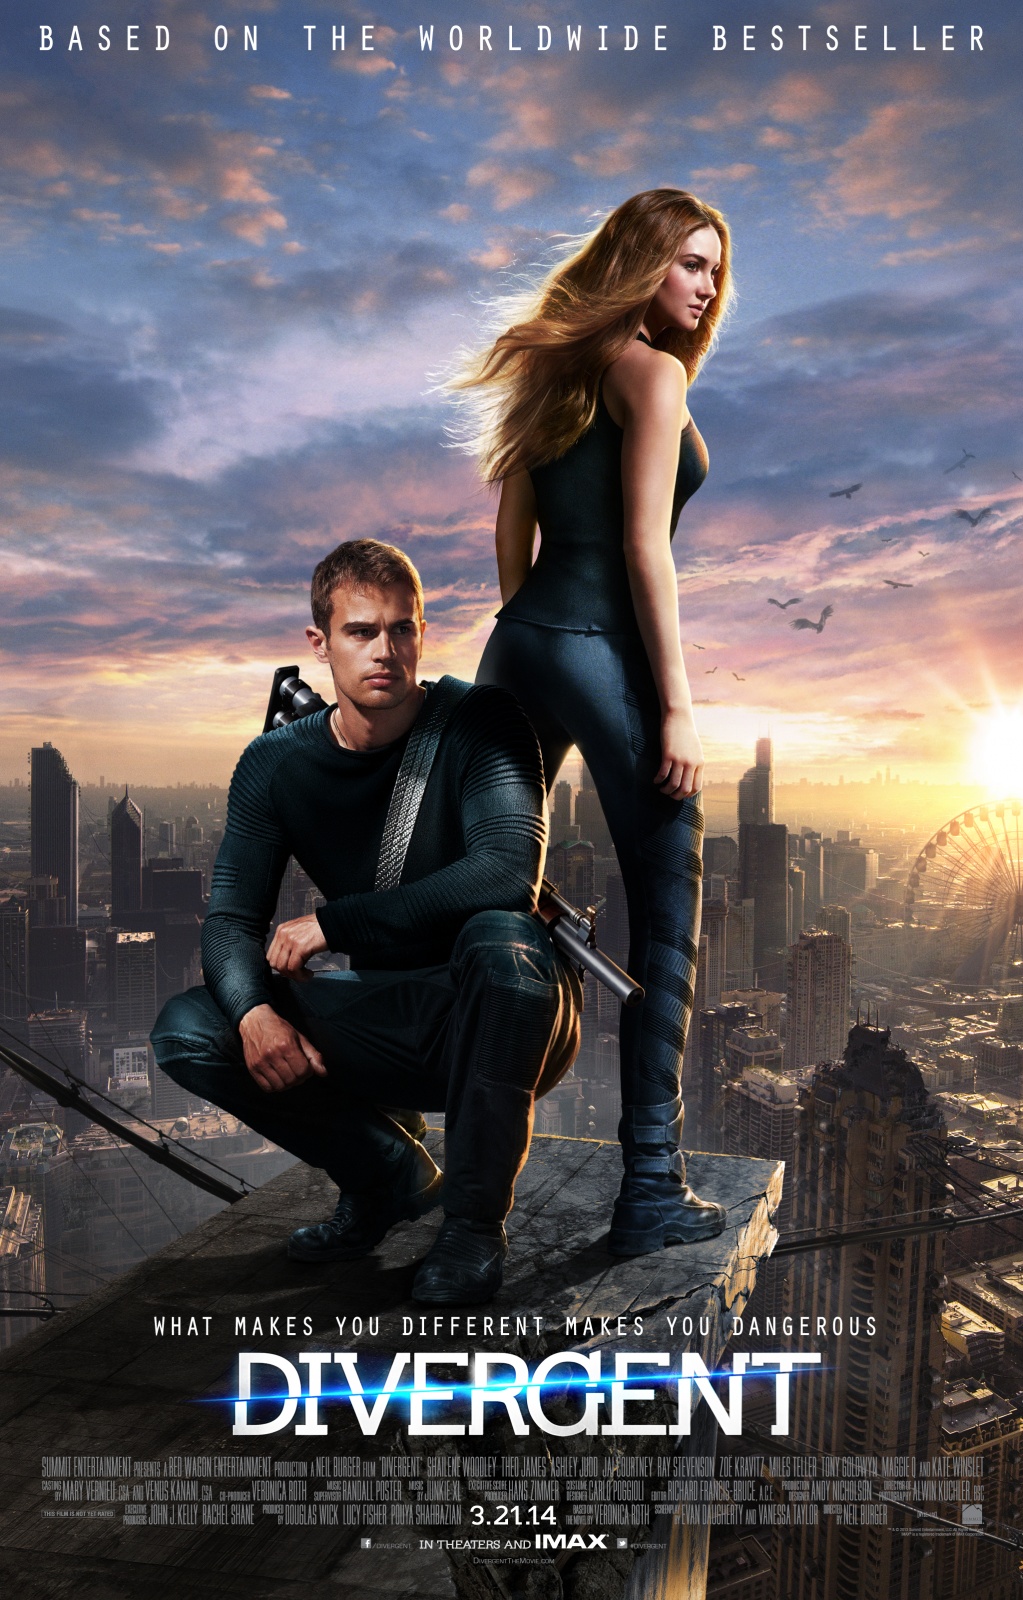 Divergent-2014-Movie-Poster1.jpg